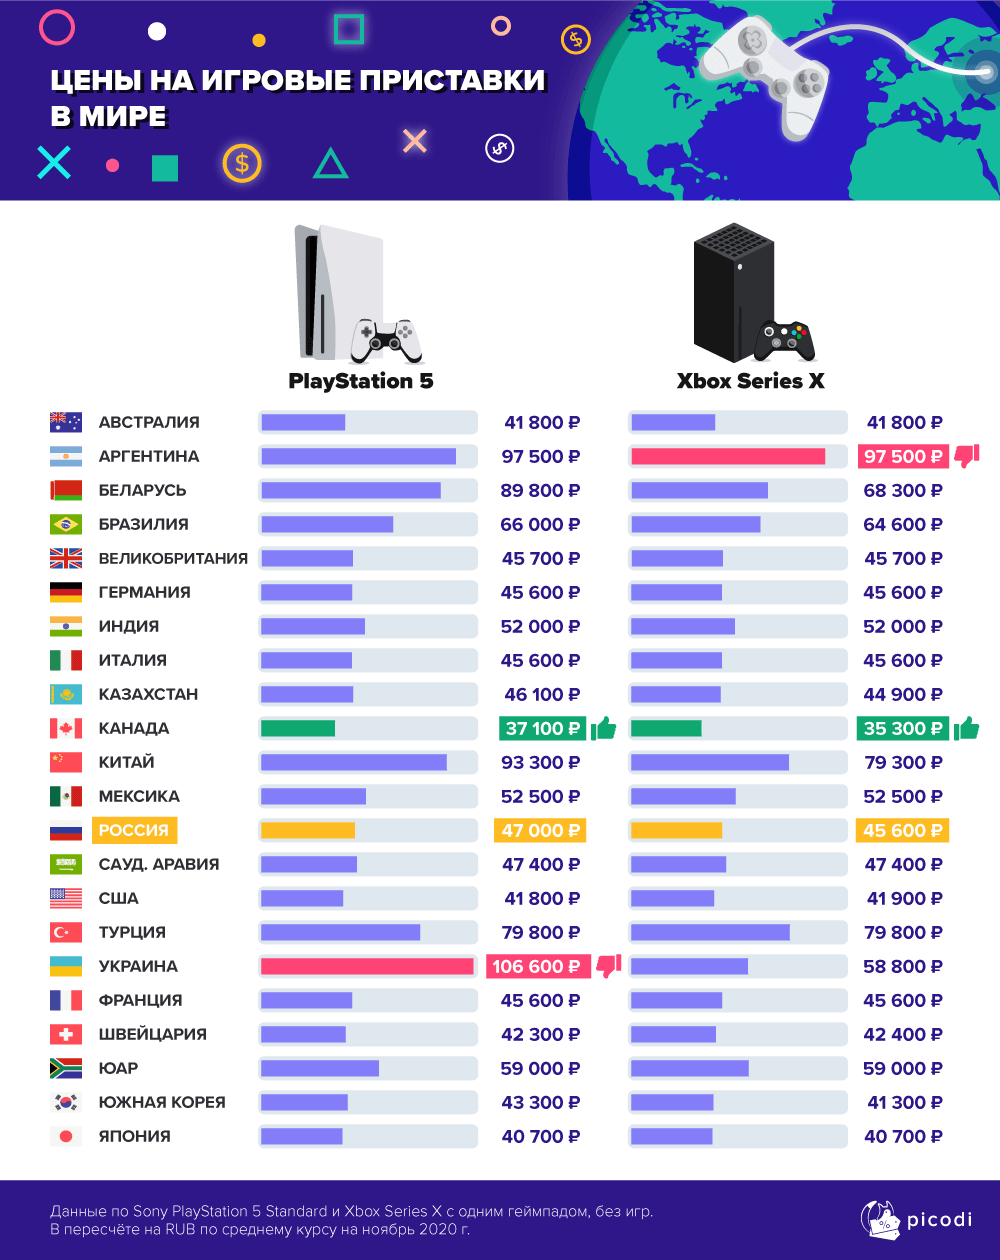 Опубликованы страны с самыми высокими ценами на PS5 и Xbox Series X